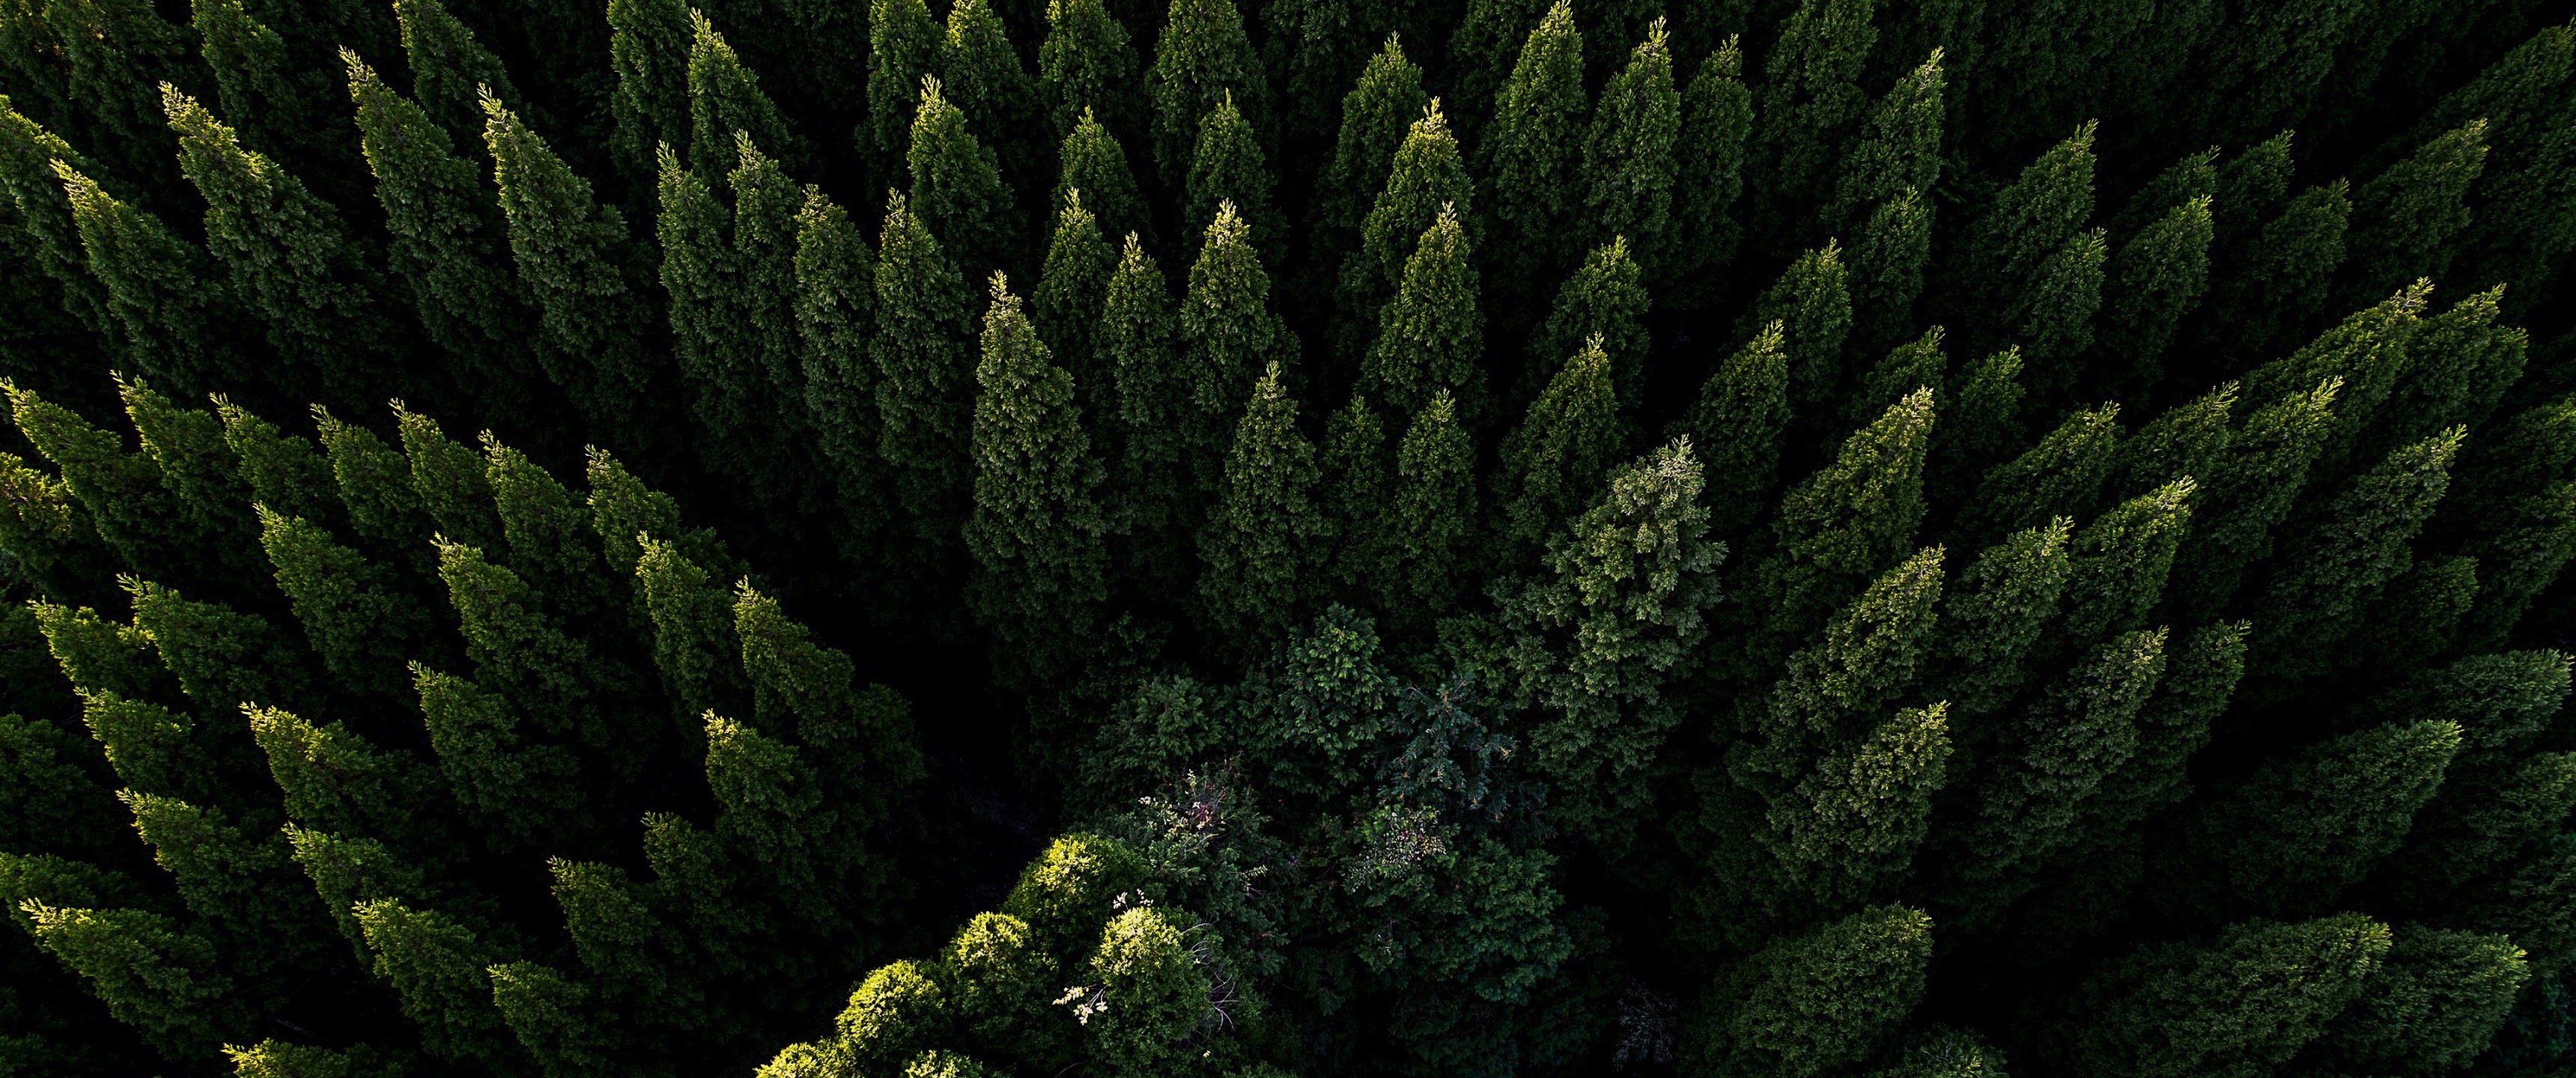 Dạo bước trong rừng và nhìn những tán cây xanh ngát bao phủ trước mắt sẽ giúp bạn thư giãn và tìm lại bình an trong cuộc sống. Hãy cùng khám phá những hình nền 4K UltraWide với cảnh vật tuyệt đẹp của thiên nhiên và thỏa mãn khát khao khám phá của bạn.